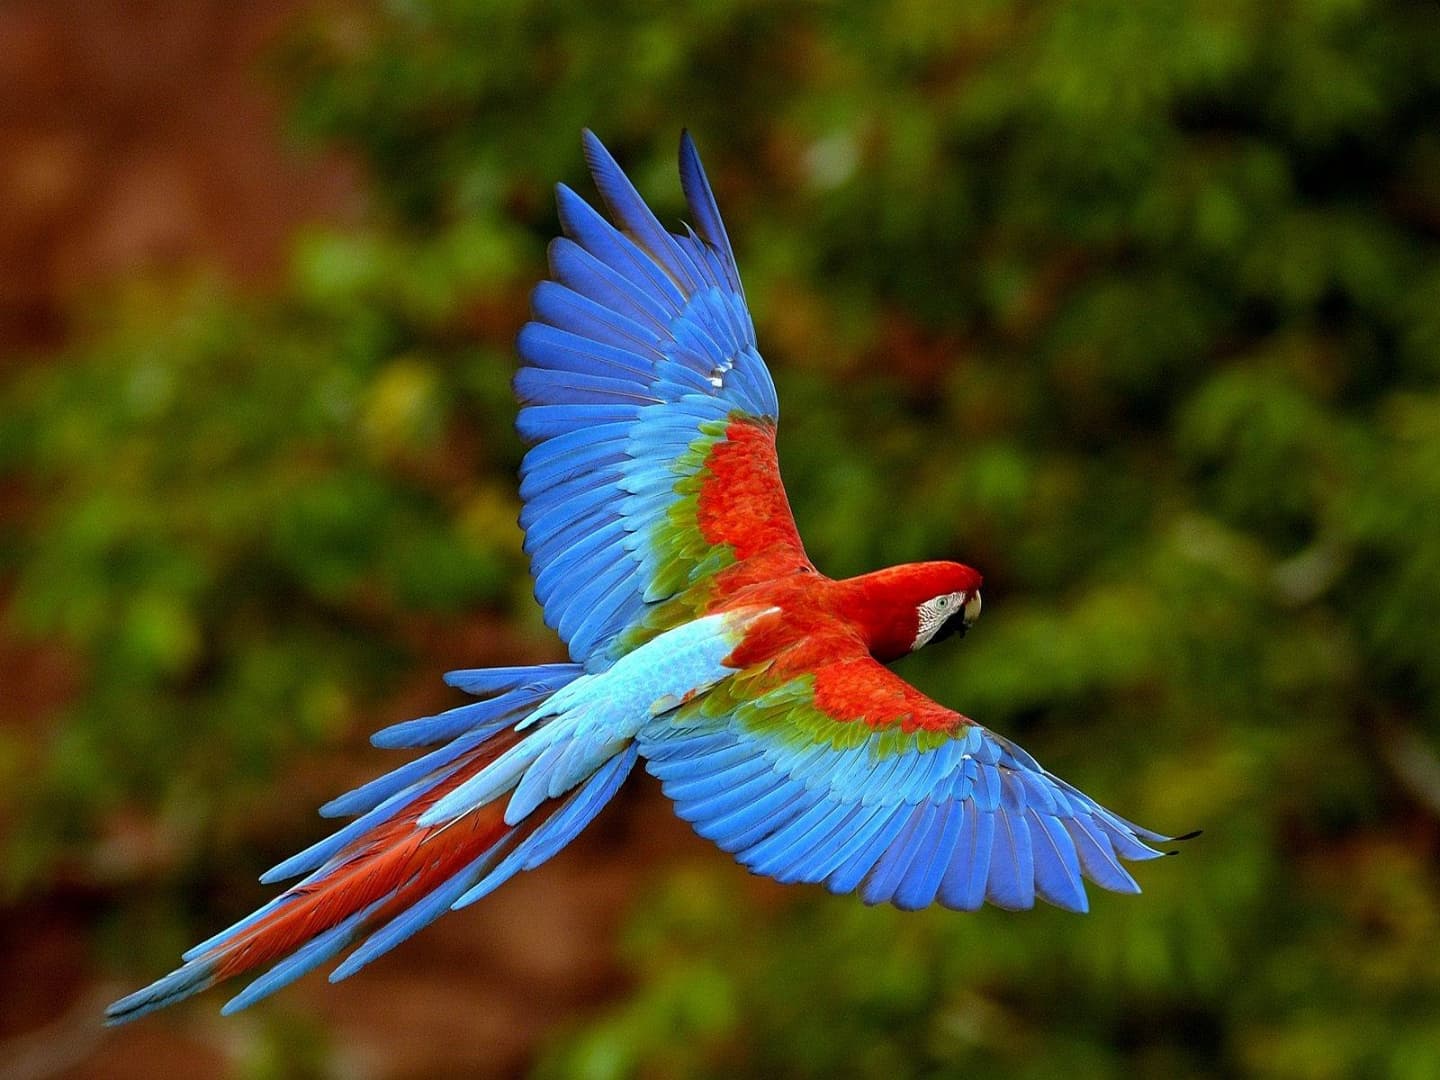 Hihetetlen! Gazdája hangját utánozva rendelt az Amazonon egy papagáj